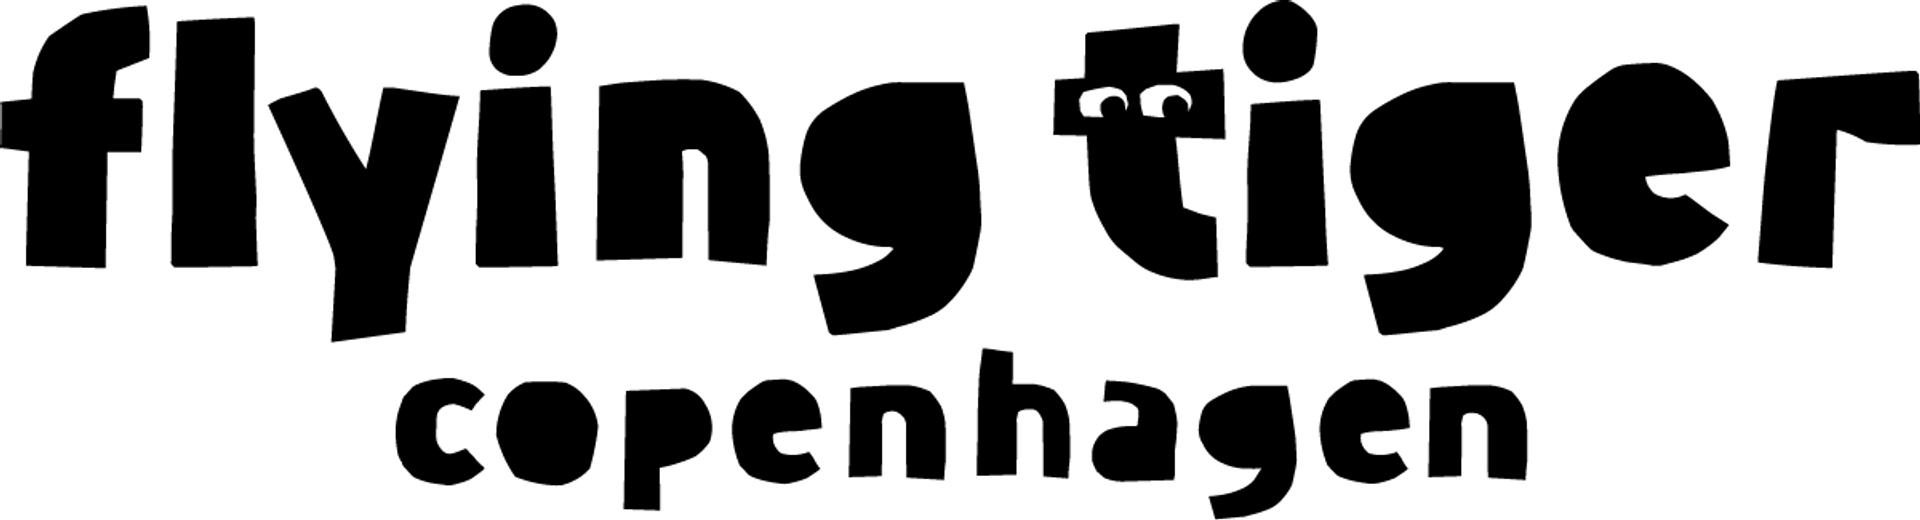 FLYING TIGER COPENHAGEN logo du catalogue